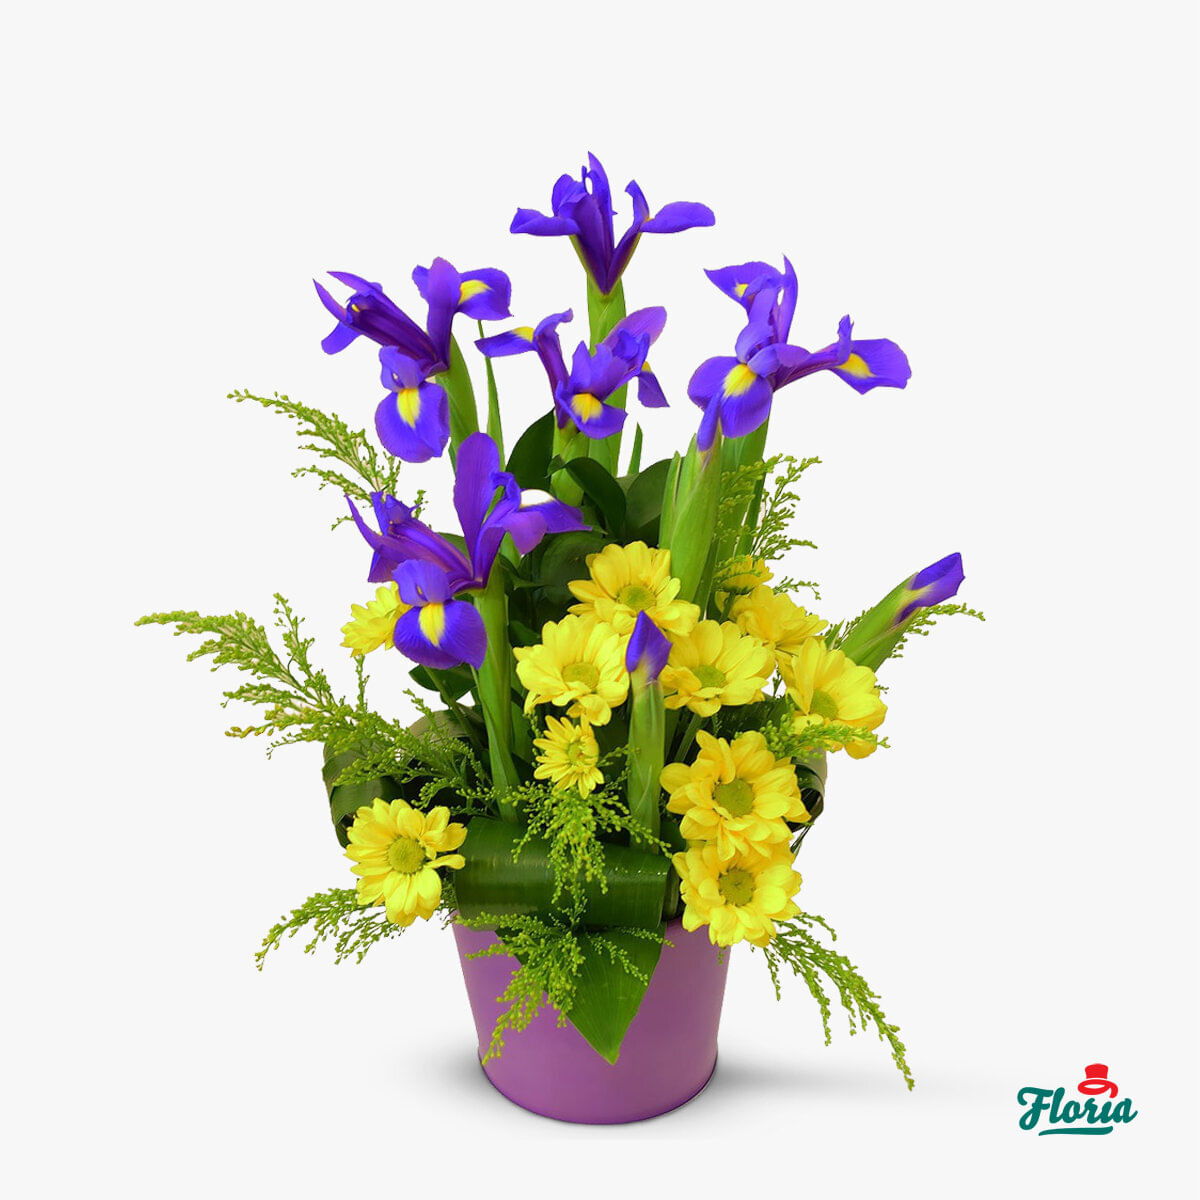 Aranjament floral – Abundenta florilor – Premium Abundenta